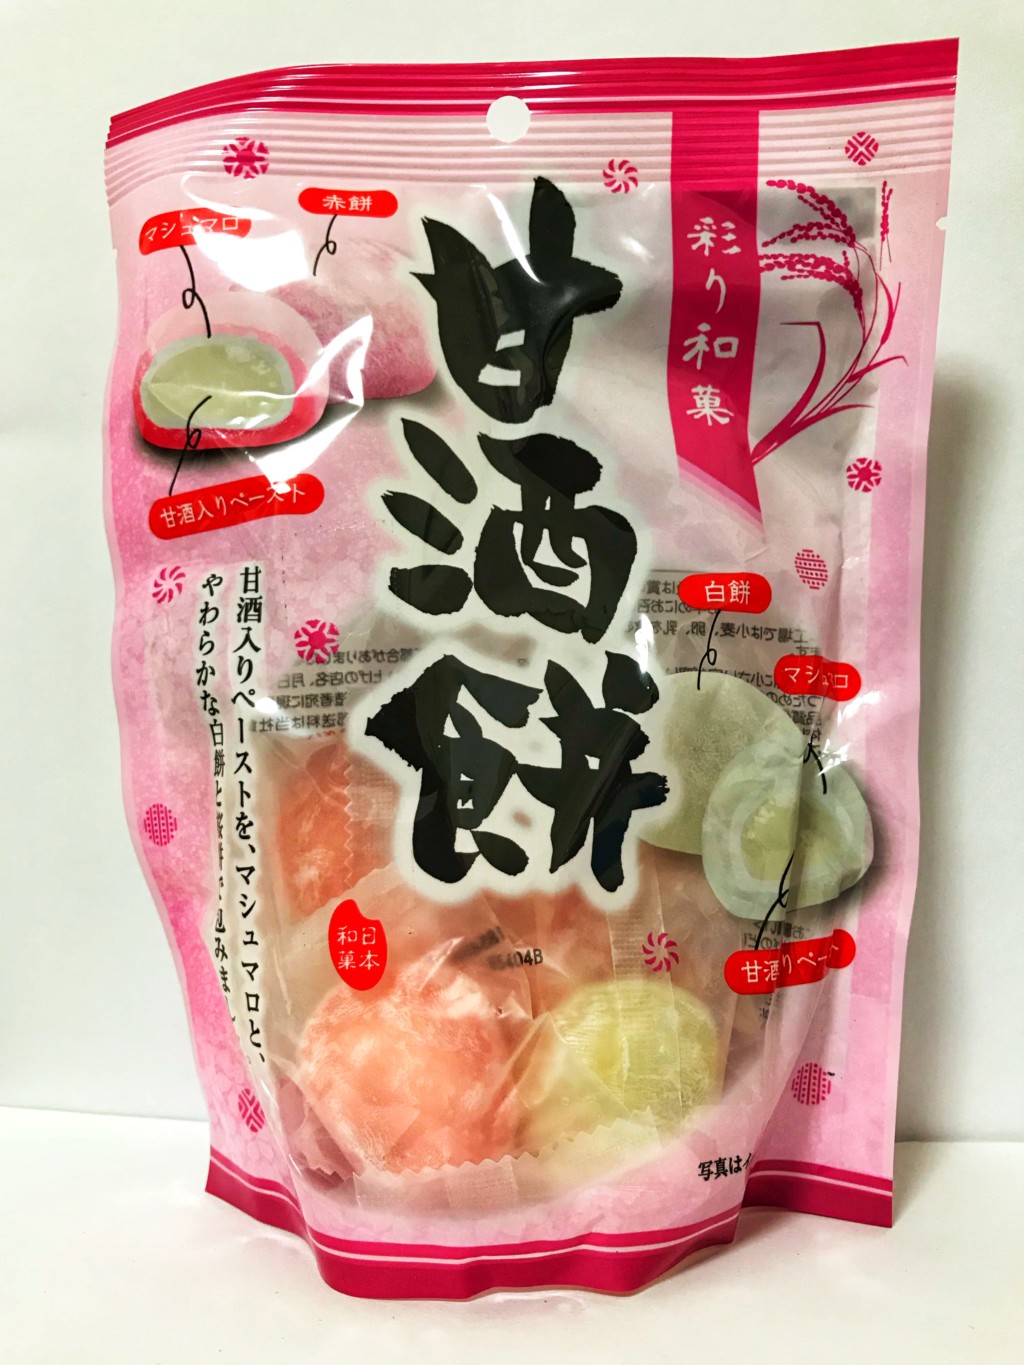 久保田製菓の酒粕と米麹を用いた餅菓子『甘酒餅』